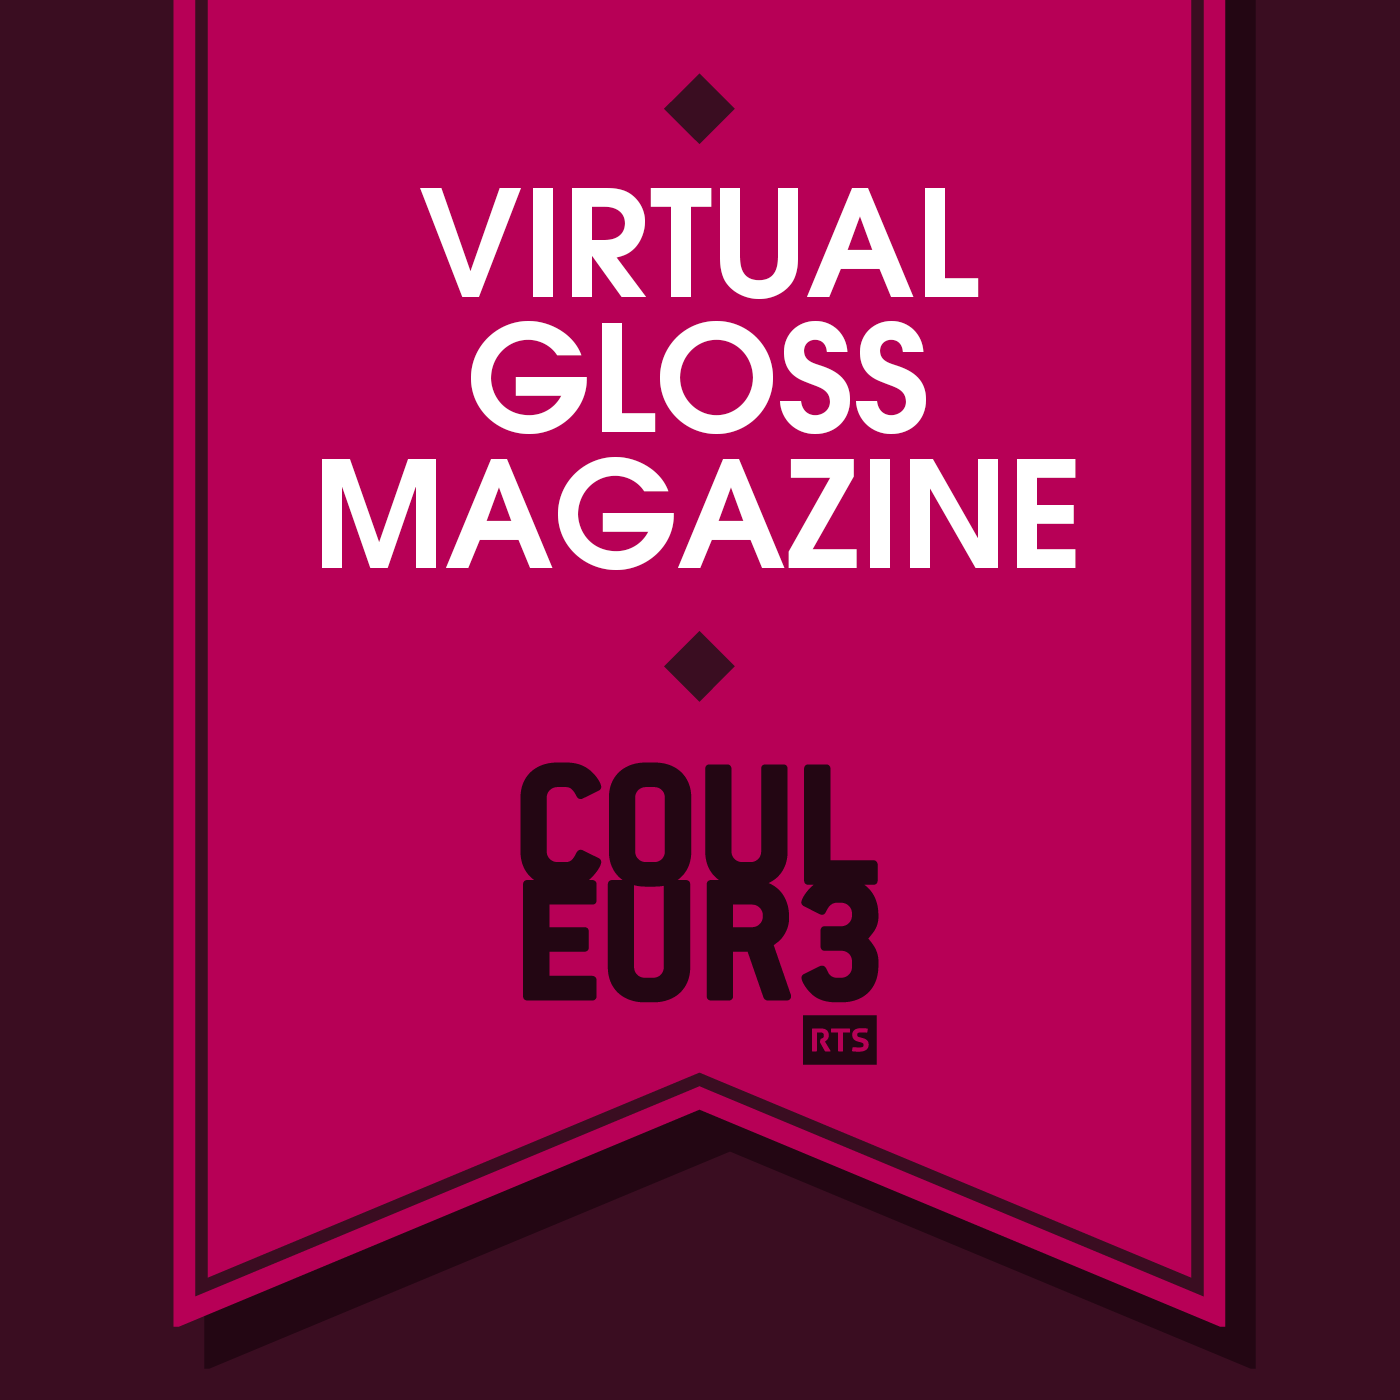 Virtual Gloss Magazine - RTS